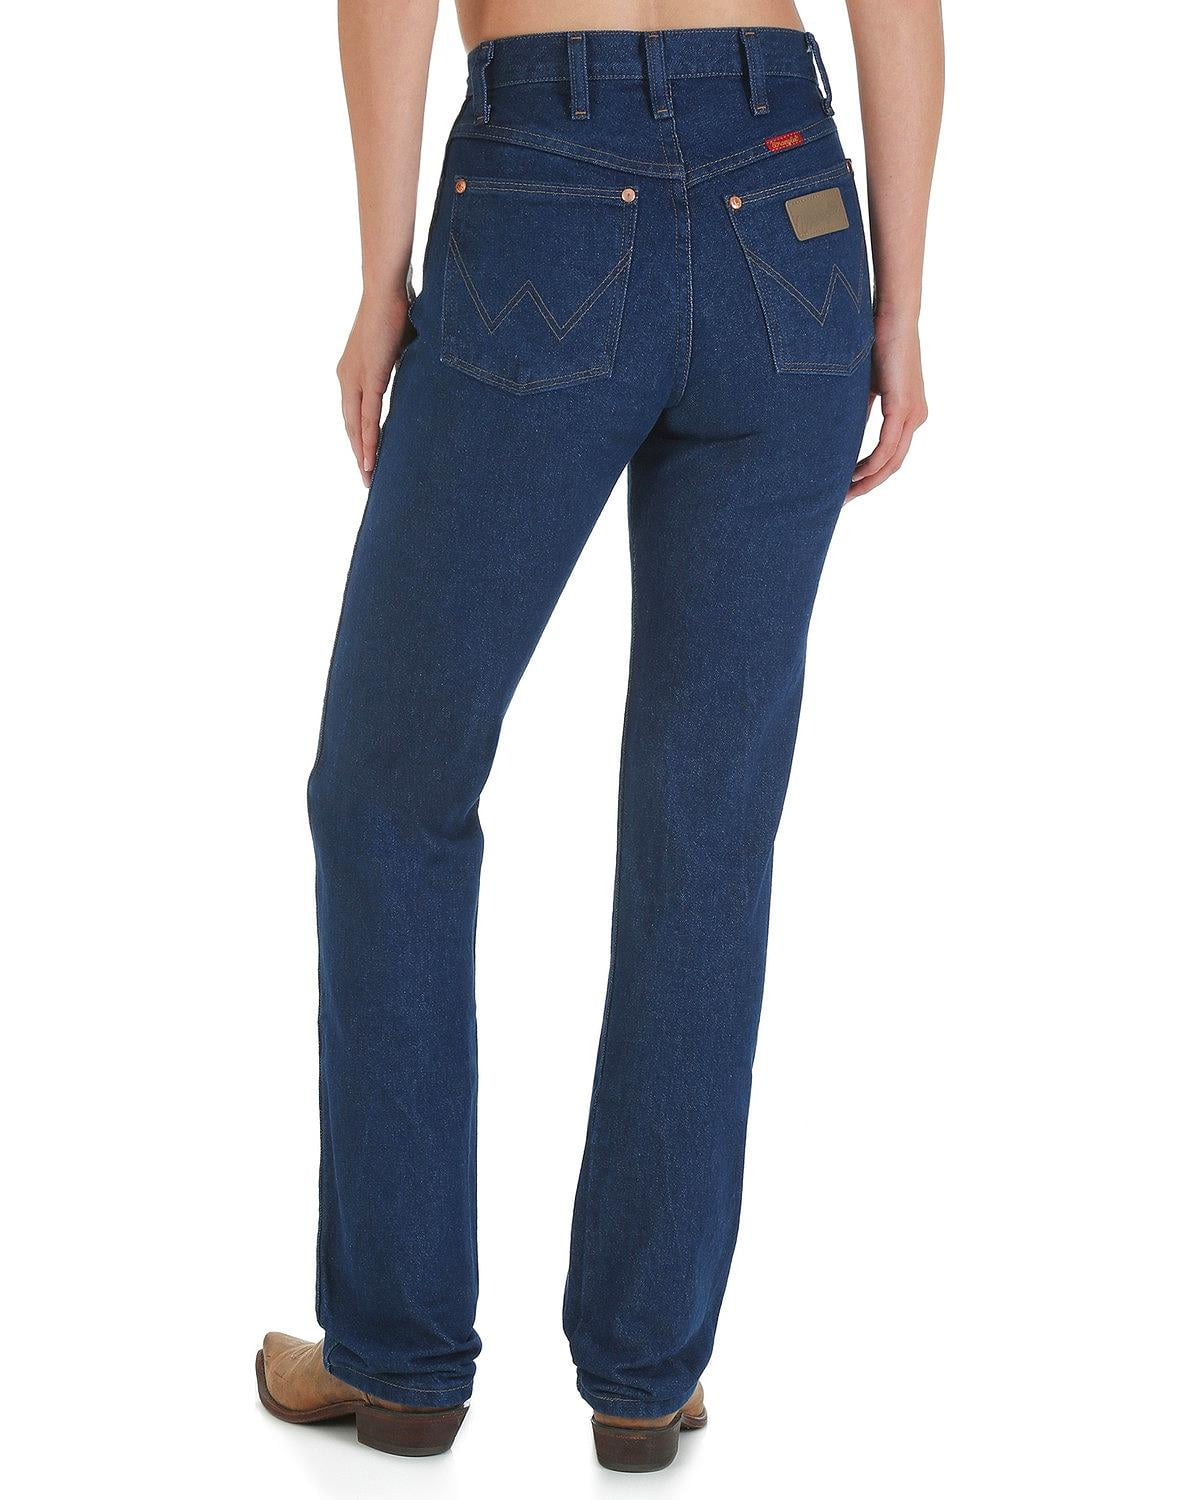 Wrangler Jeans For Women Size Chart